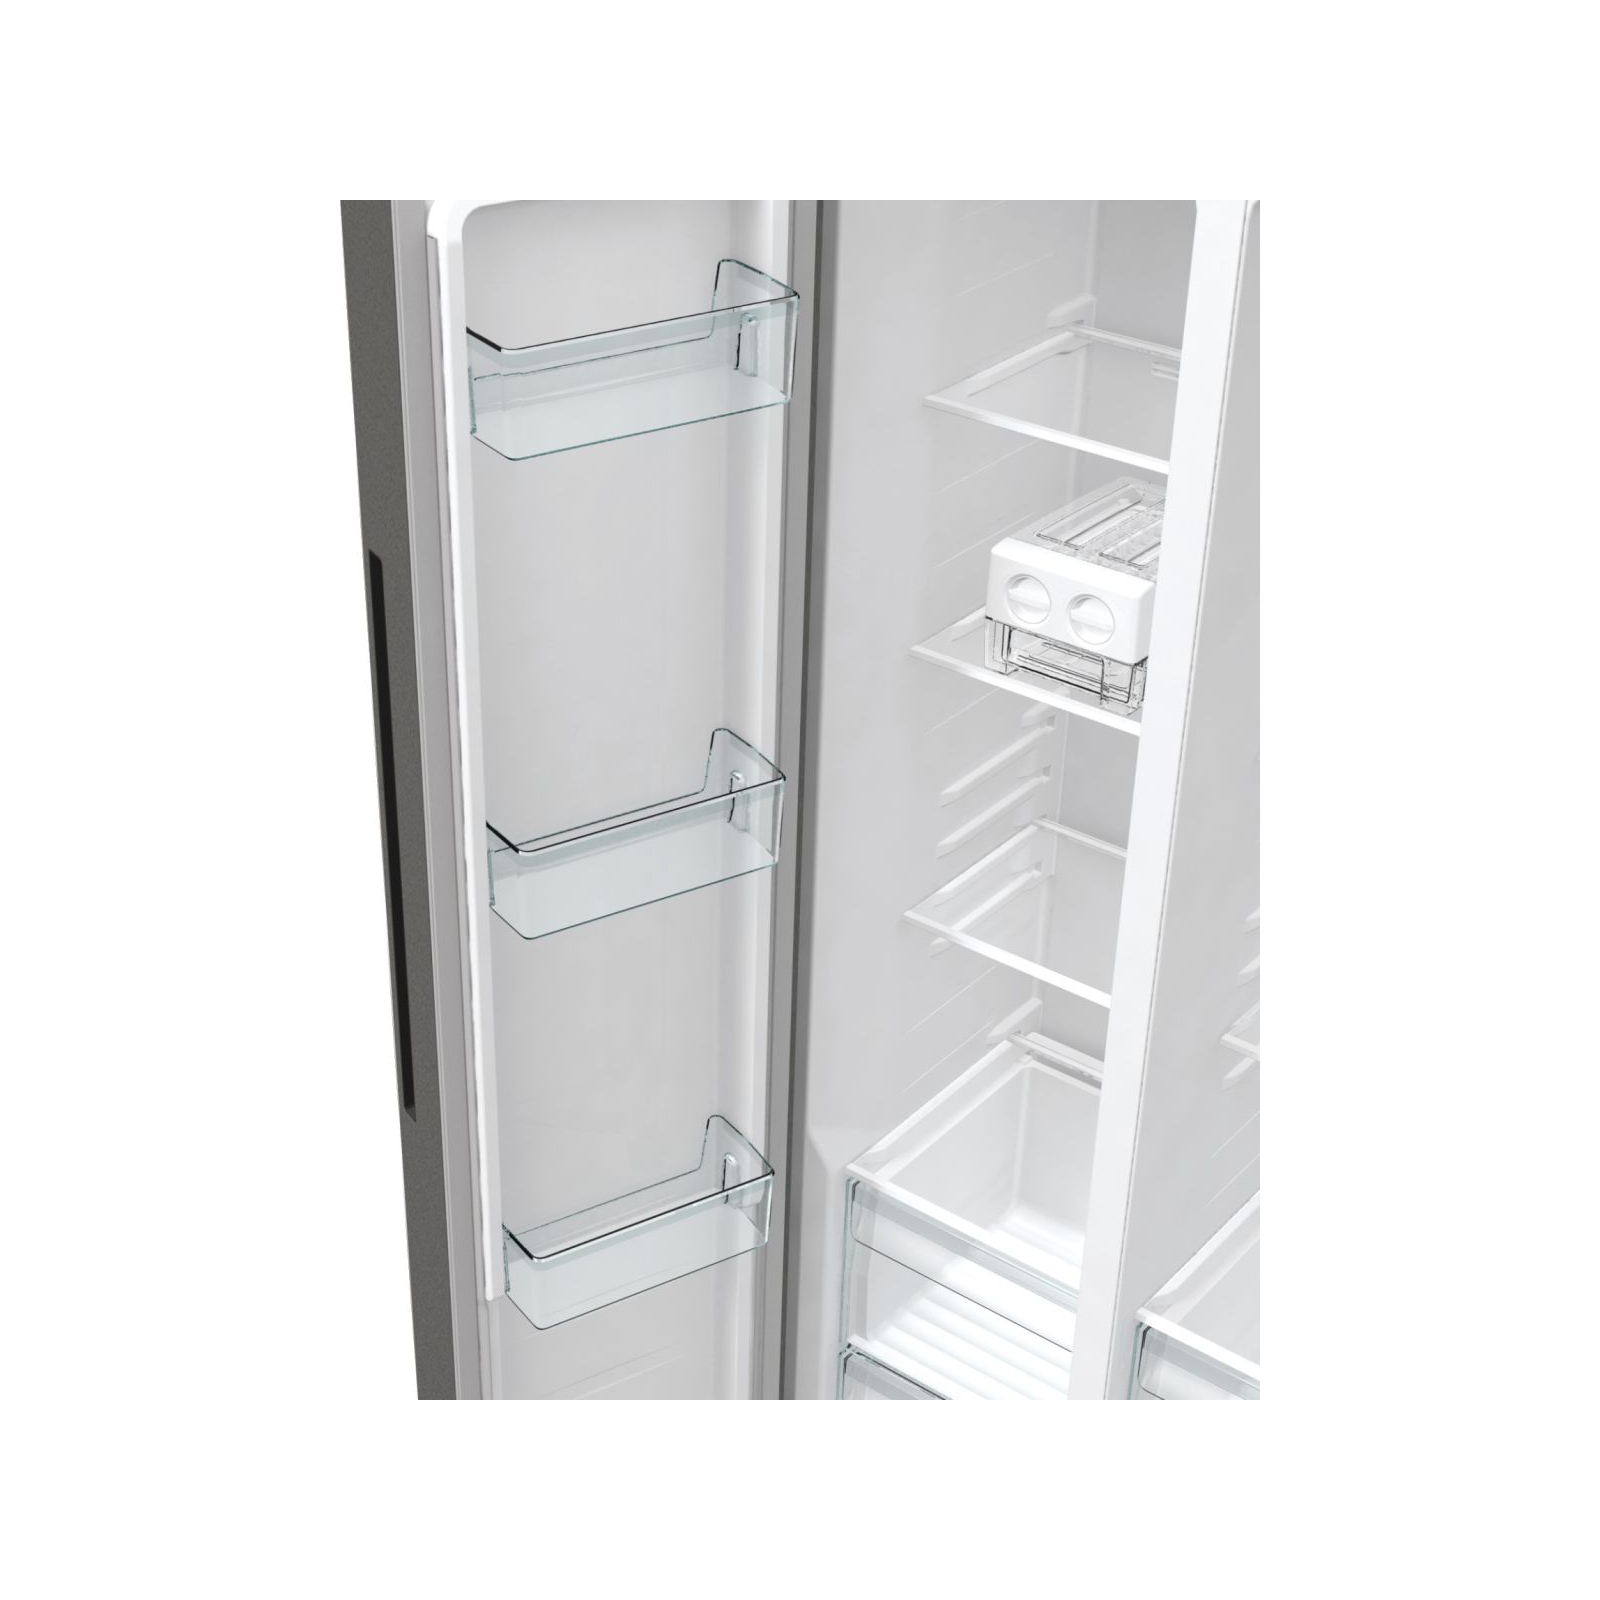 Холодильник Gorenje NRR9185EAXL изображение 11